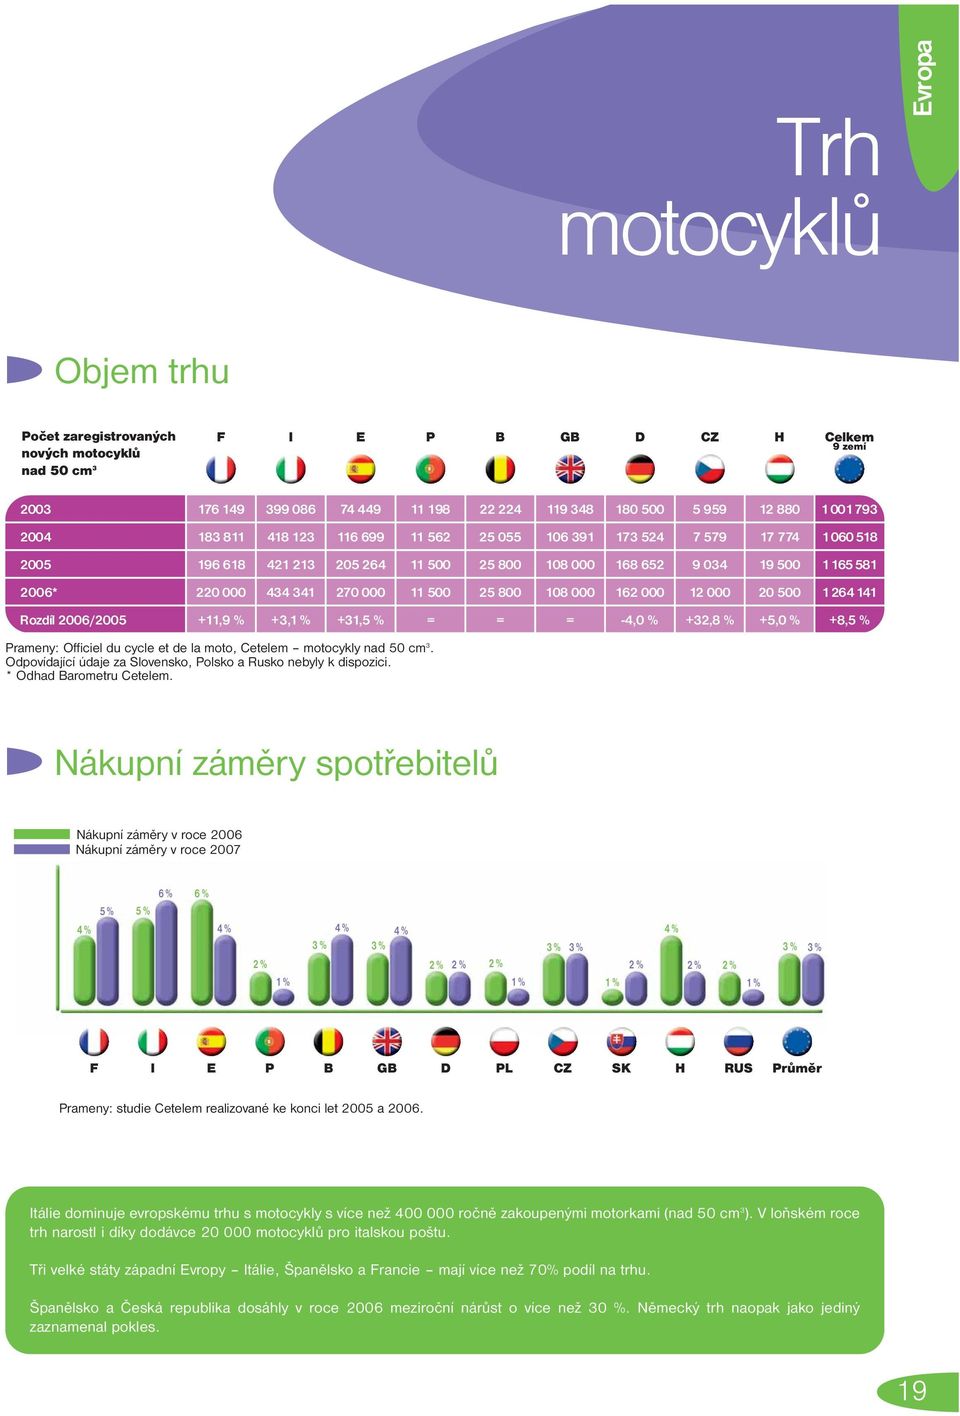 +8,5 % Prameny: Officiel du cycle et de la moto, Cetelem motocykly nad 50 cm. Odpovídající údaje za Slovensko, Polsko a Rusko nebyly k dispozici. * Odhad Barometru Cetelem.